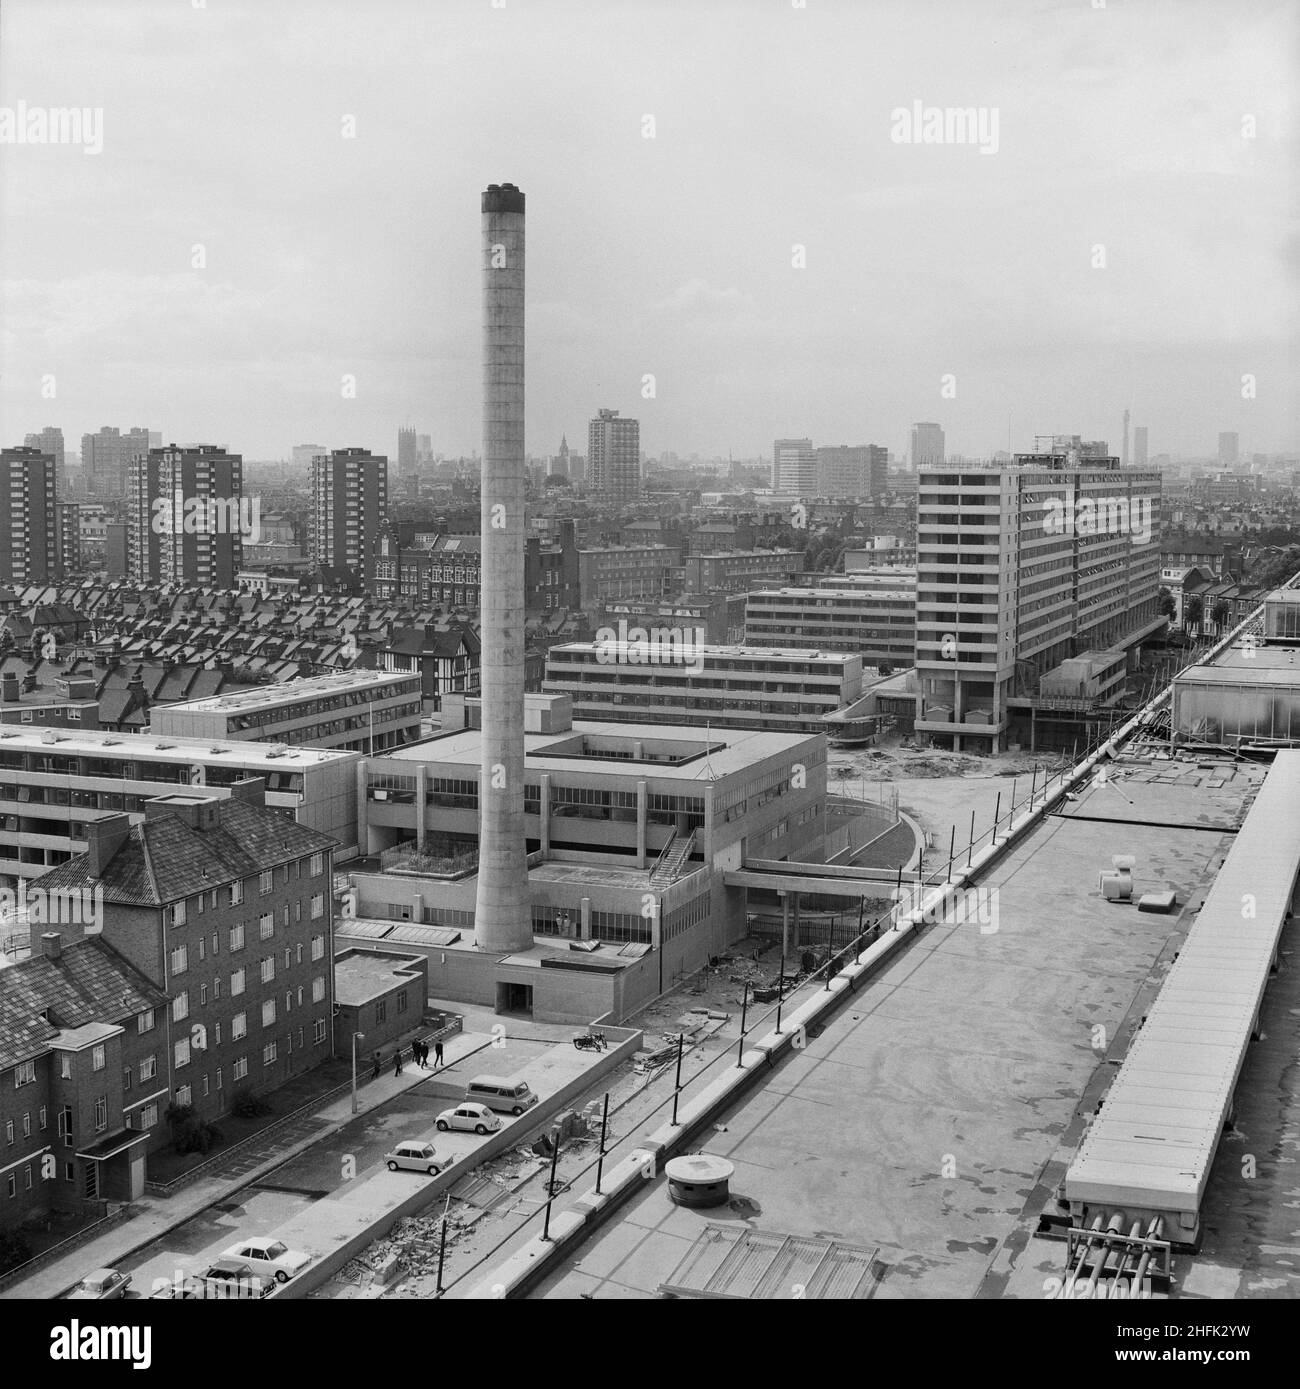 Aylesbury Estate, Walworth, Southwark, London, 29/06/1970. Blick nordwestlich über das Aylesbury Estate, zeigt das 'Center Building' mit seinem Kamin aus dem Jahr 170ft und das Taplow House, ein 14-stöckiger Wohnblock auf der rechten Seite. Die südliche Region von Laing begann 1967 mit dem Bau des Aylesbury Estate. Zu dieser Zeit war es das größte industrialisierte Wohnungsbauprojekt, das jemals von einem Londoner Stadtteil durchgeführt wurde, und es stellte Wohnungen für mehr als 7000 Personen bereit, bestehend aus flachen und hohen linearen Blöcken mit vier bis vierzehn Stockwerken, die Wohnungen und Maisonetten enthalten und nach dem 12M Jespersen-System gebaut wurden. Das „Center Buildi Stockfoto